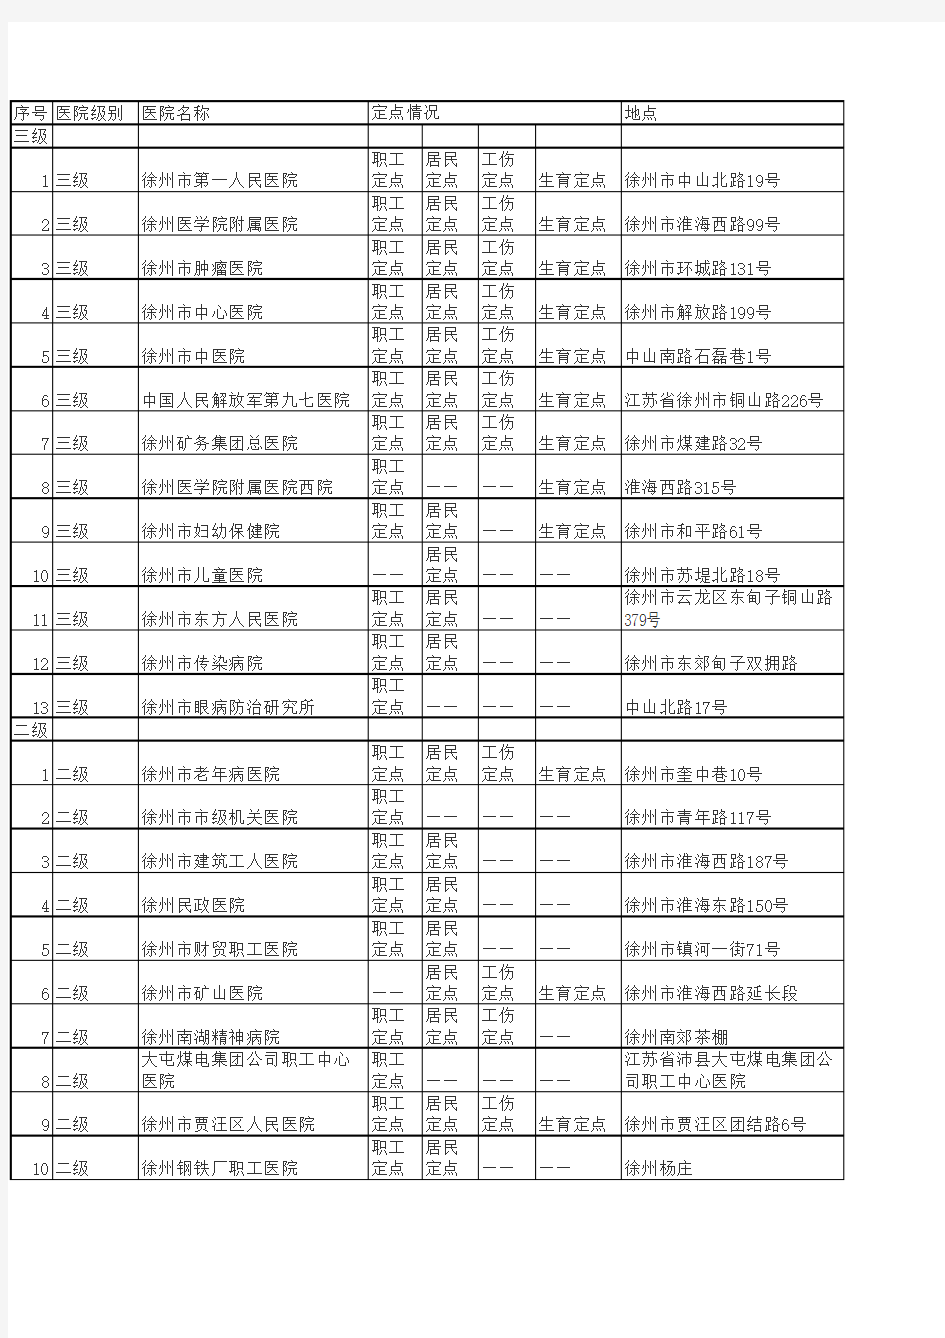 徐州市(区)城镇职工基本医疗保险定点医疗机构名单表